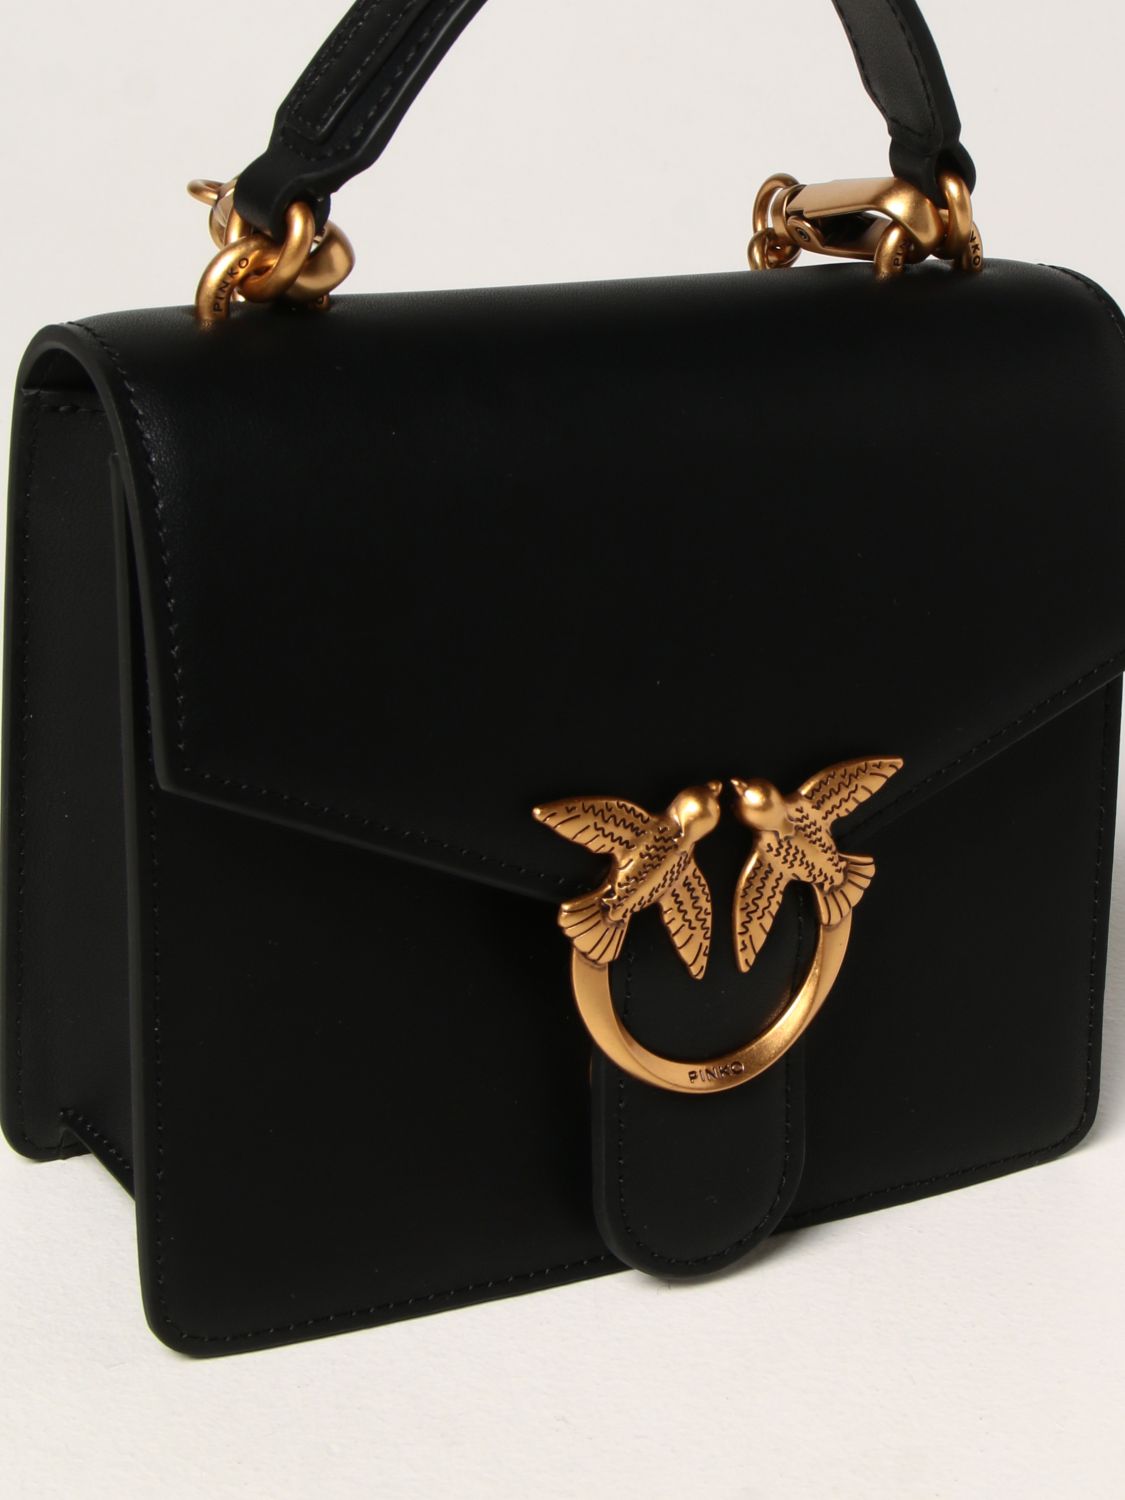 PINKO: Love Mini Handle Simply bag in leather - Black | Pinko mini bag ...